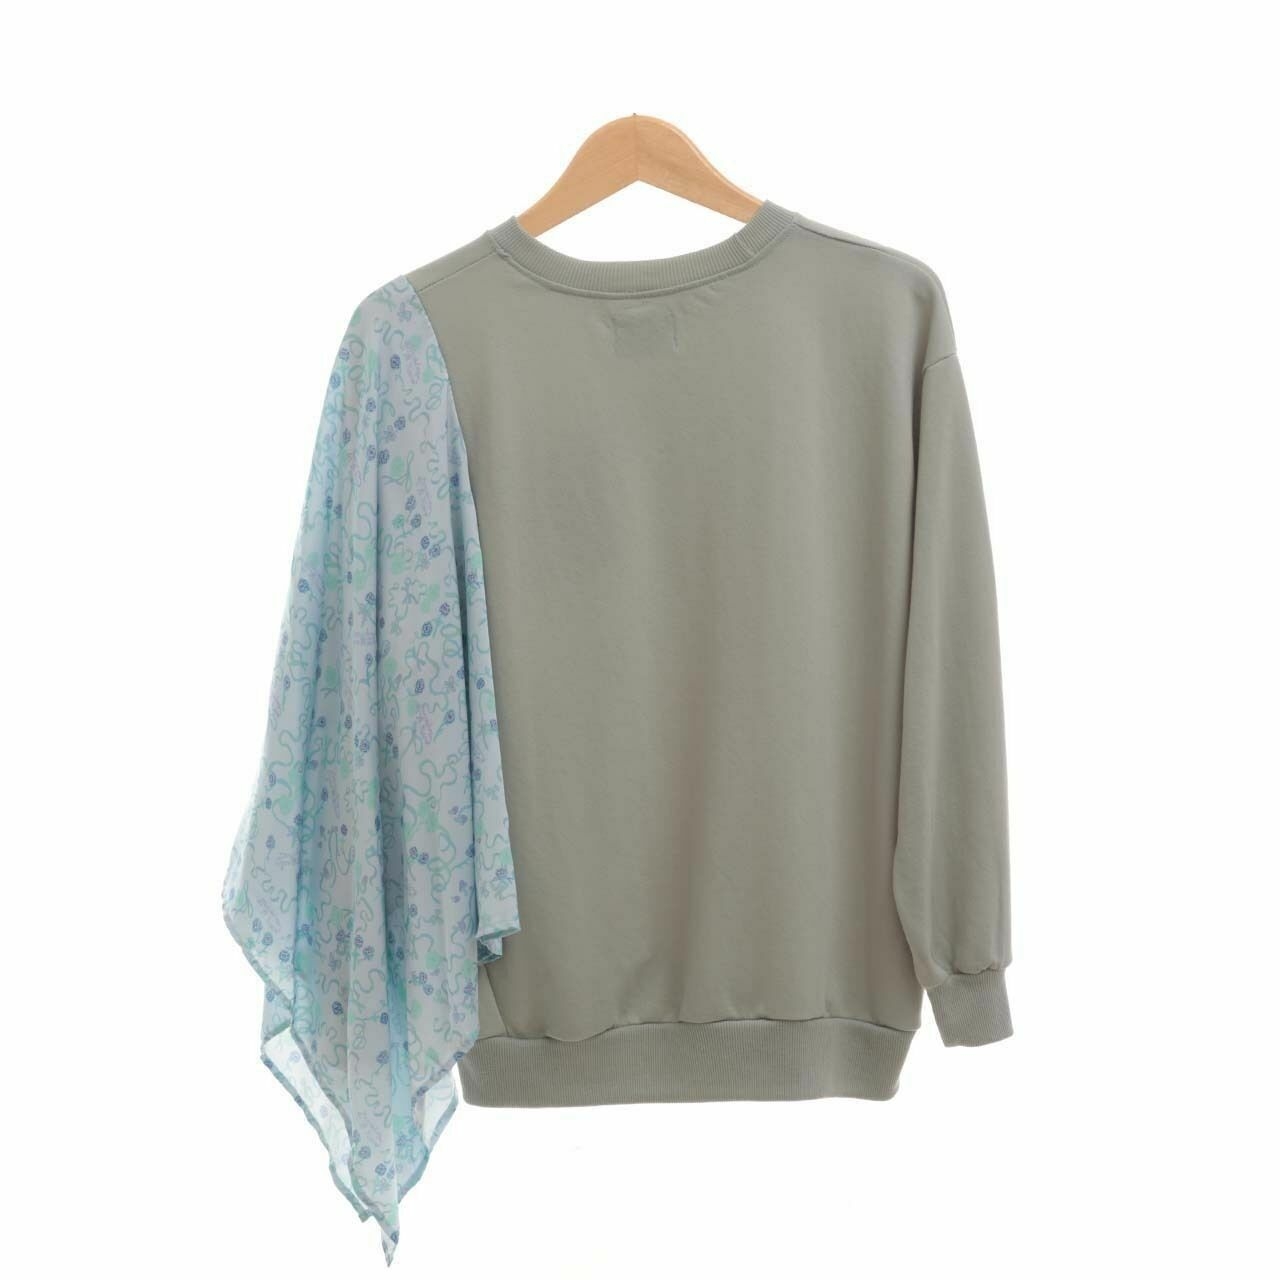 IKYK for Someday Mint & Multi Pattern Sweater